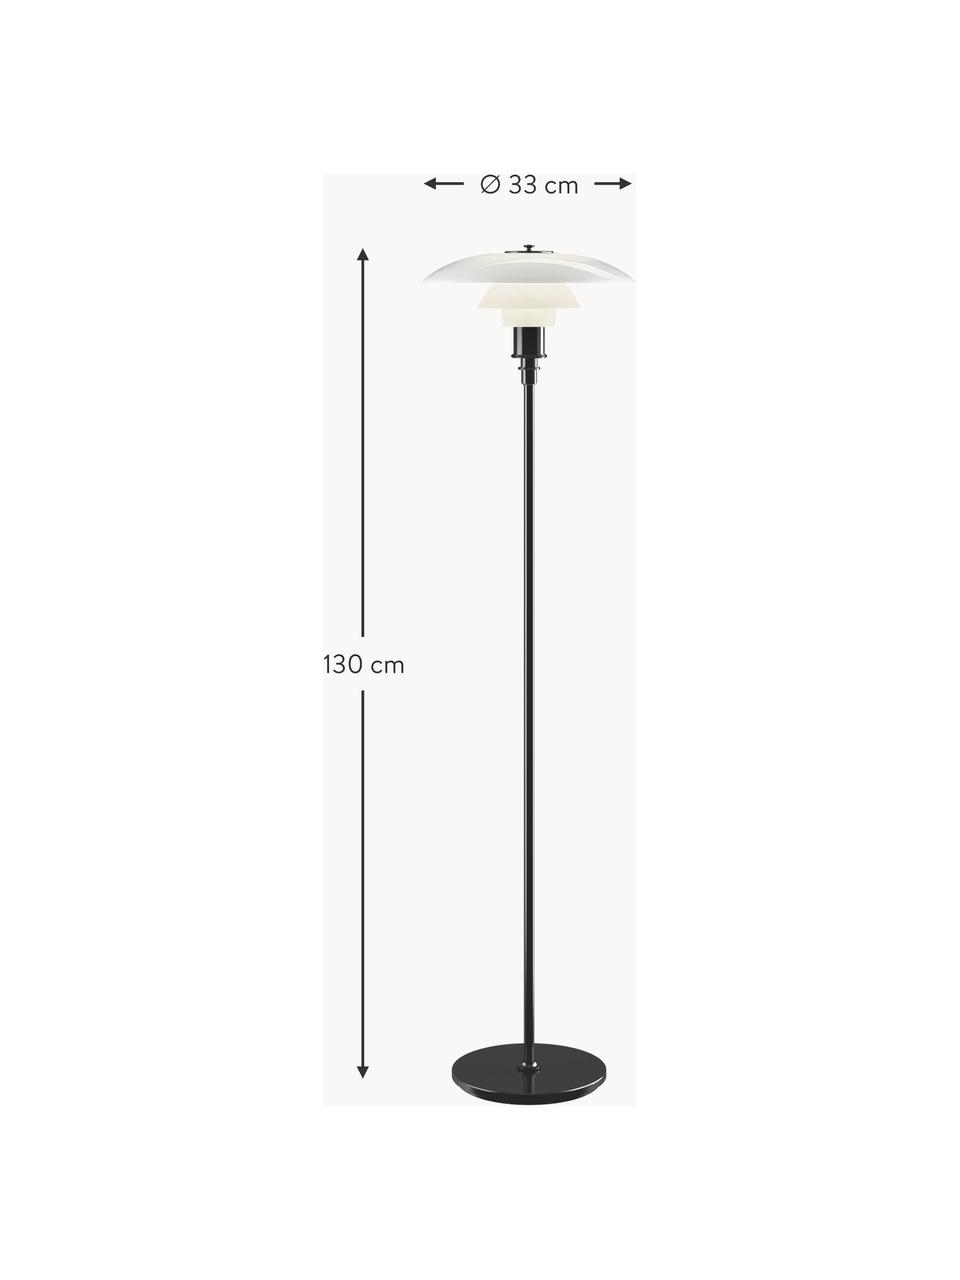 Malá stojacia lampa PH 3½-2½, Čierna, biela, V 130 cm